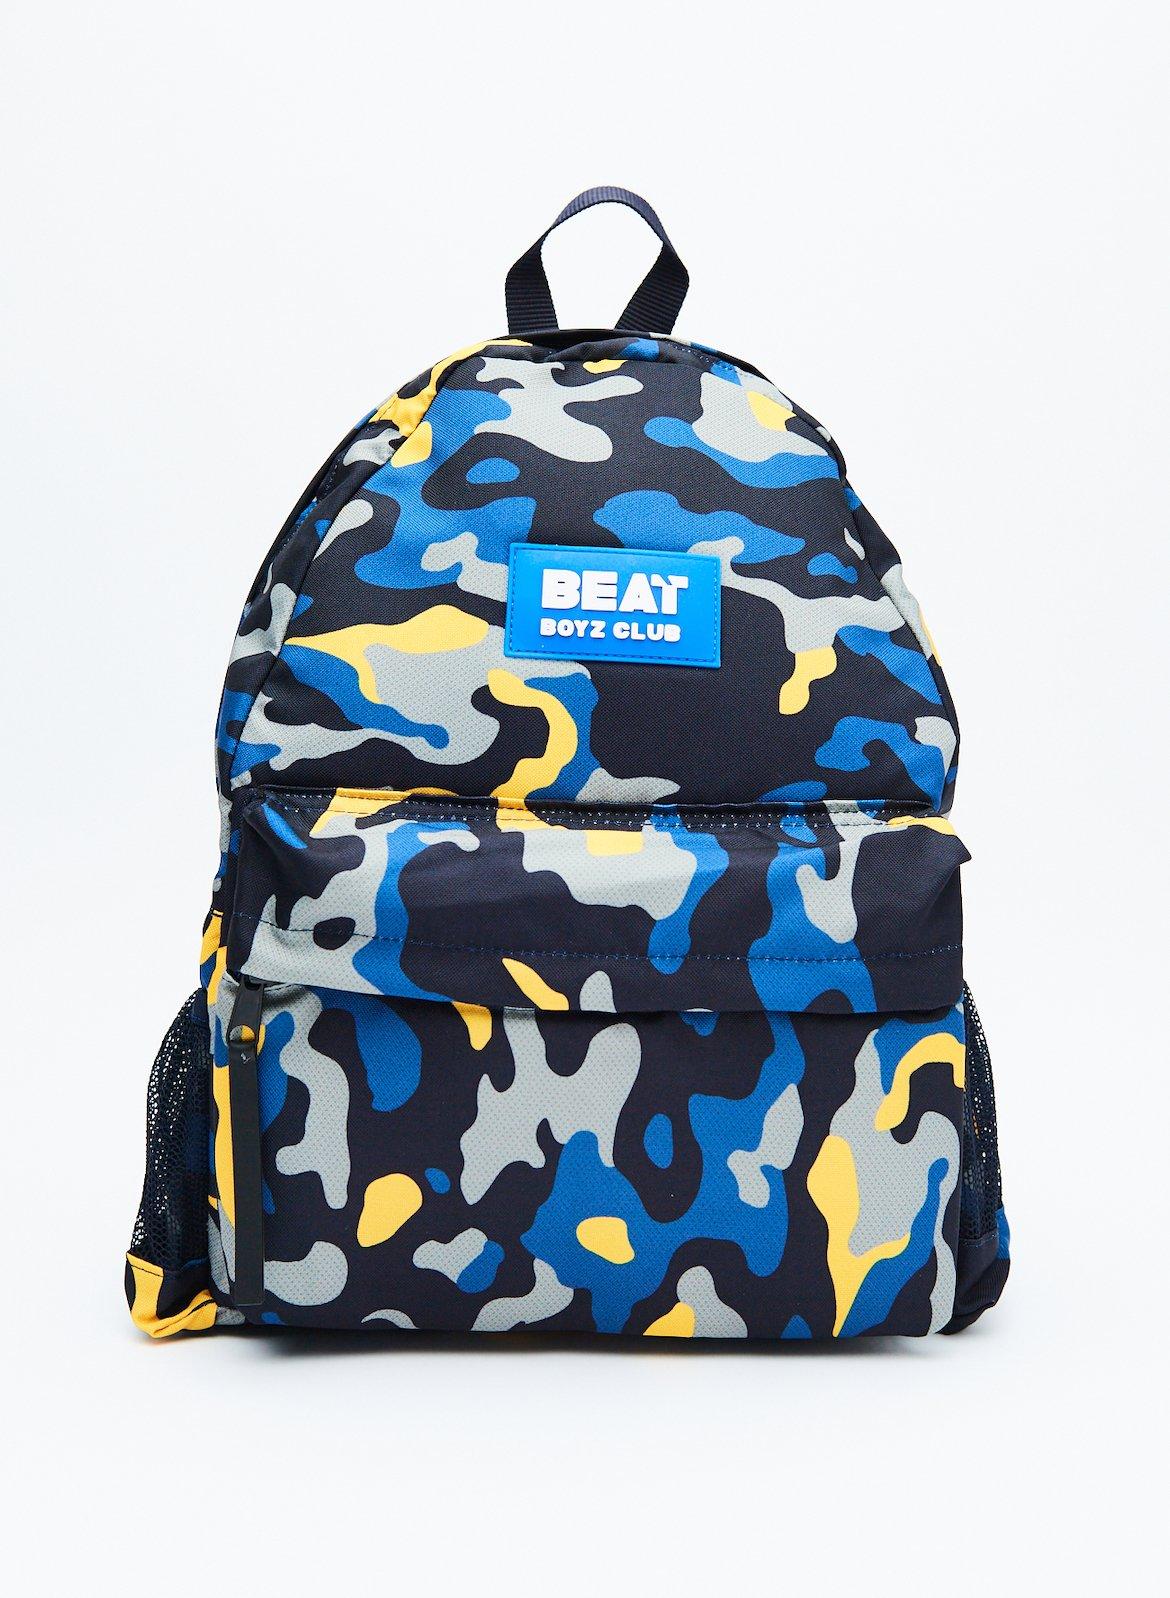 сумка рюкзак avi outdoor ranger cargobag camo Рюкзак для мальчика 'Camo Pop' Beat Boyz Club, темно-синий